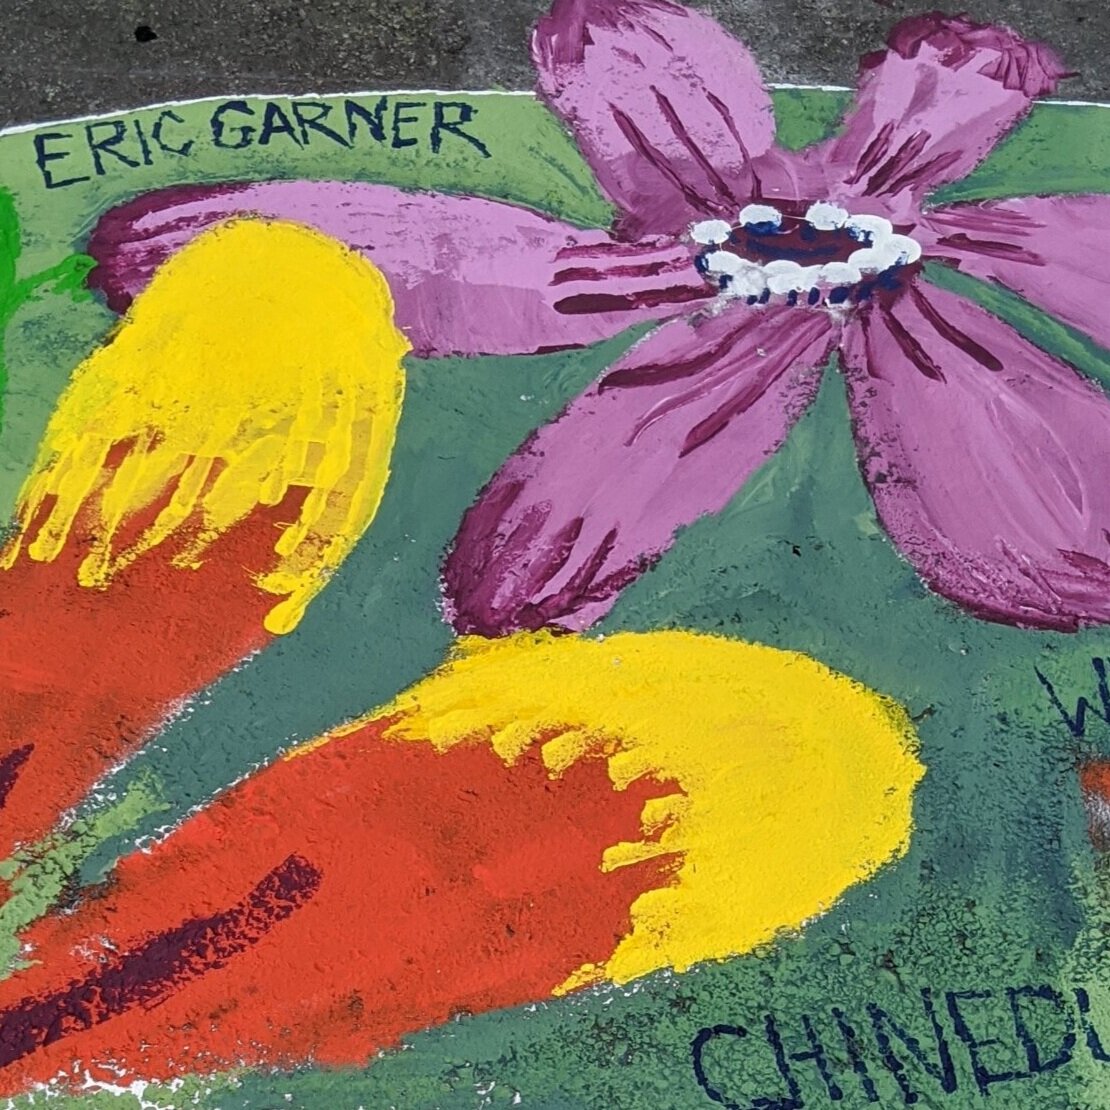 Mr. Eric Garner